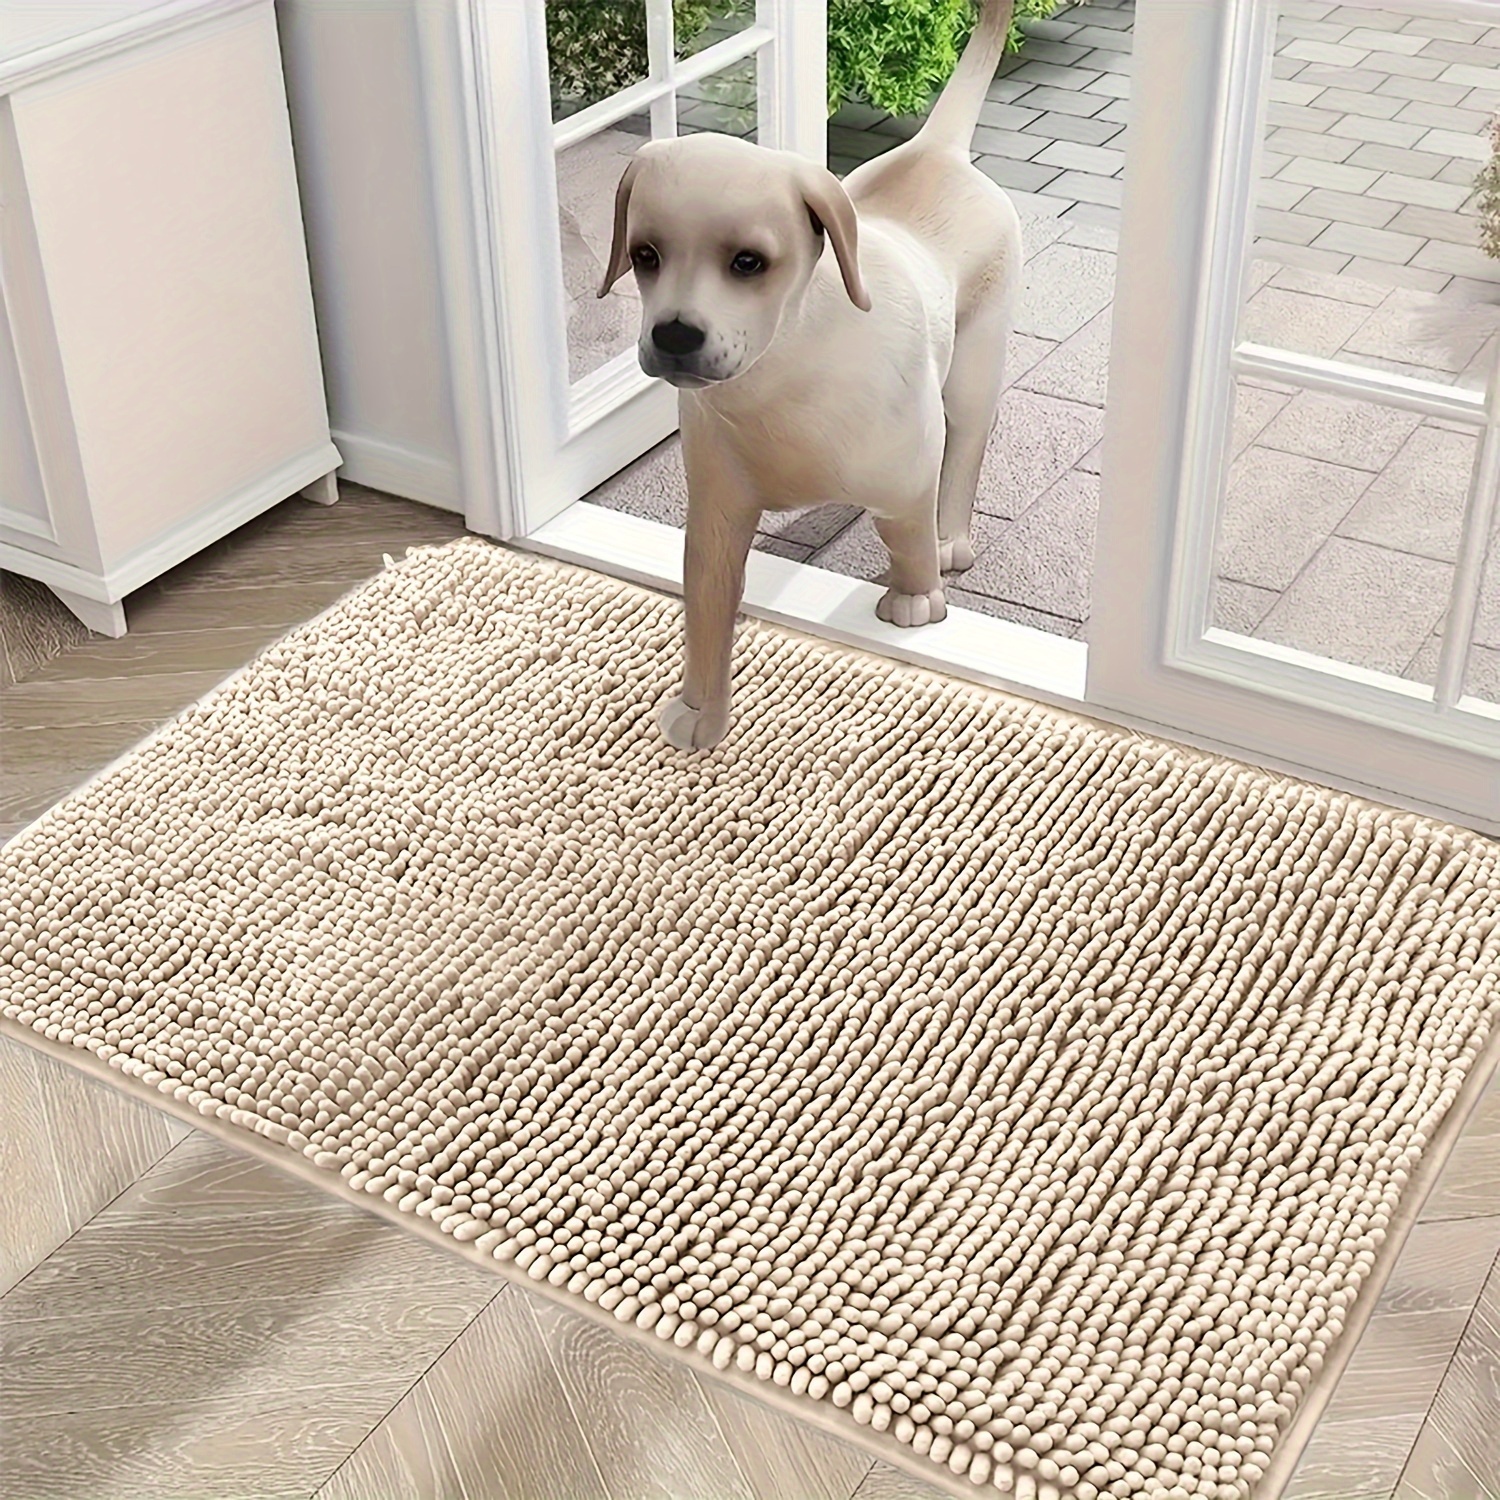 Tapis absorbant antidérapant pour chien de compagnie, impression 3D, décor  mignon Labrador Doorvirus, tapis de glouton